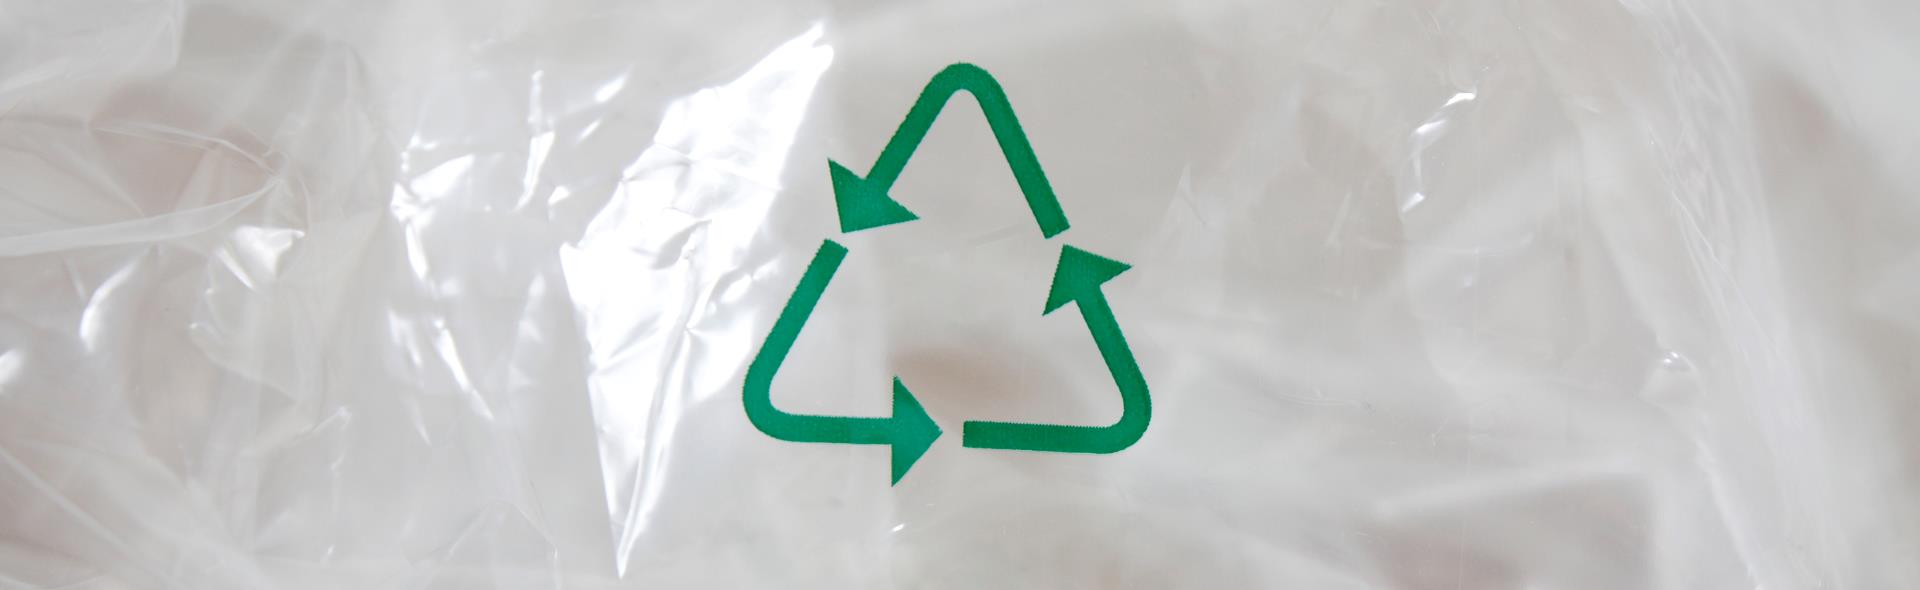 Blød plast med grønt genbrugslogo